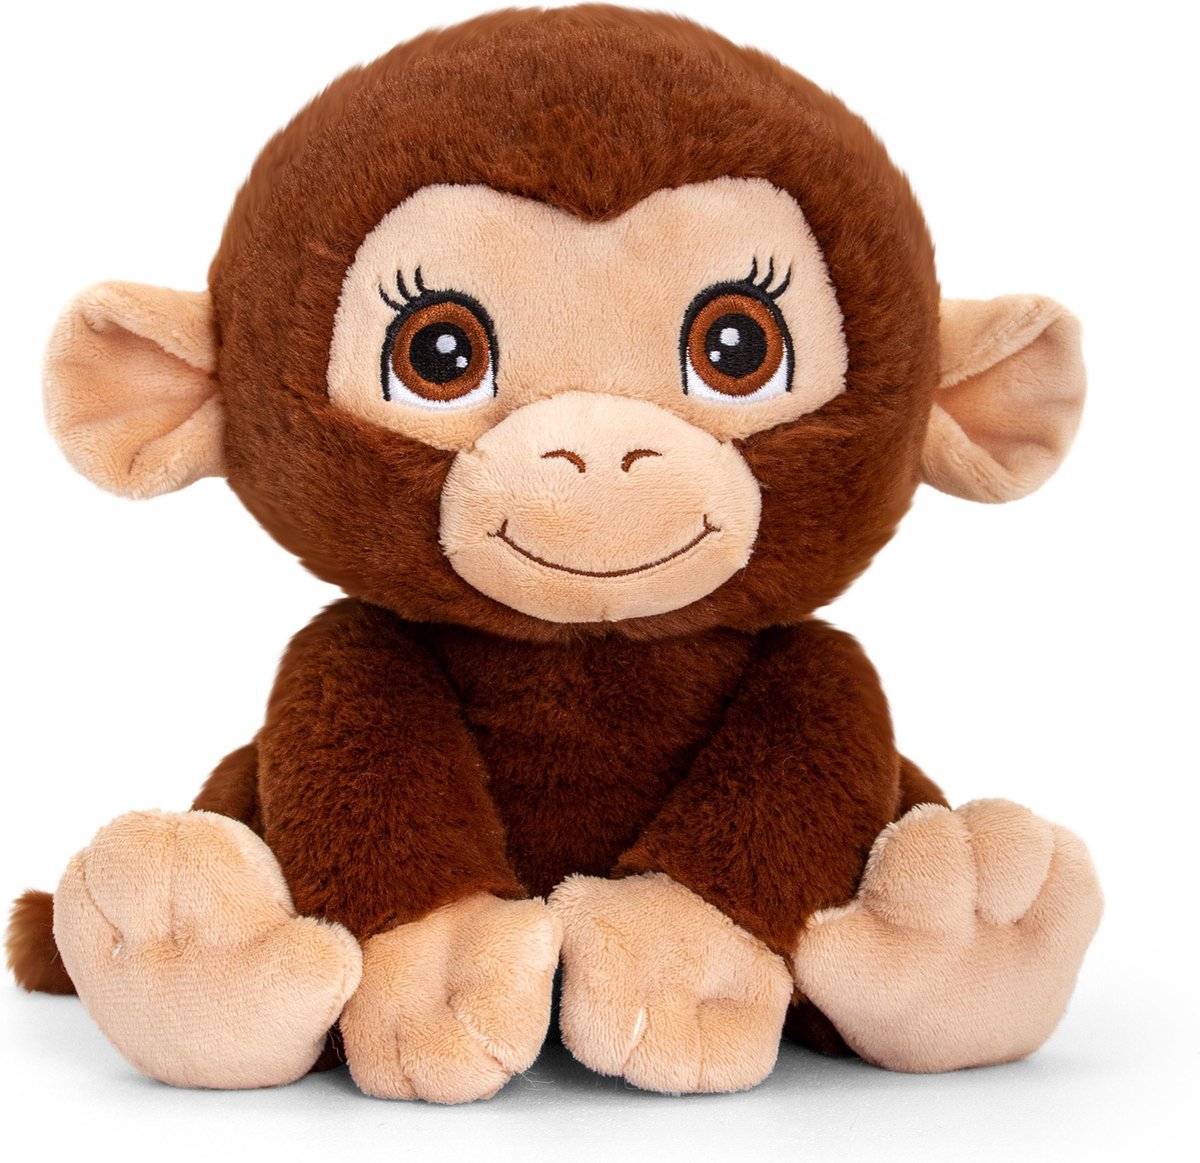 Pluche knuffel dieren chimpansee aap 25 cm - Knuffelbeesten apen speelgoed